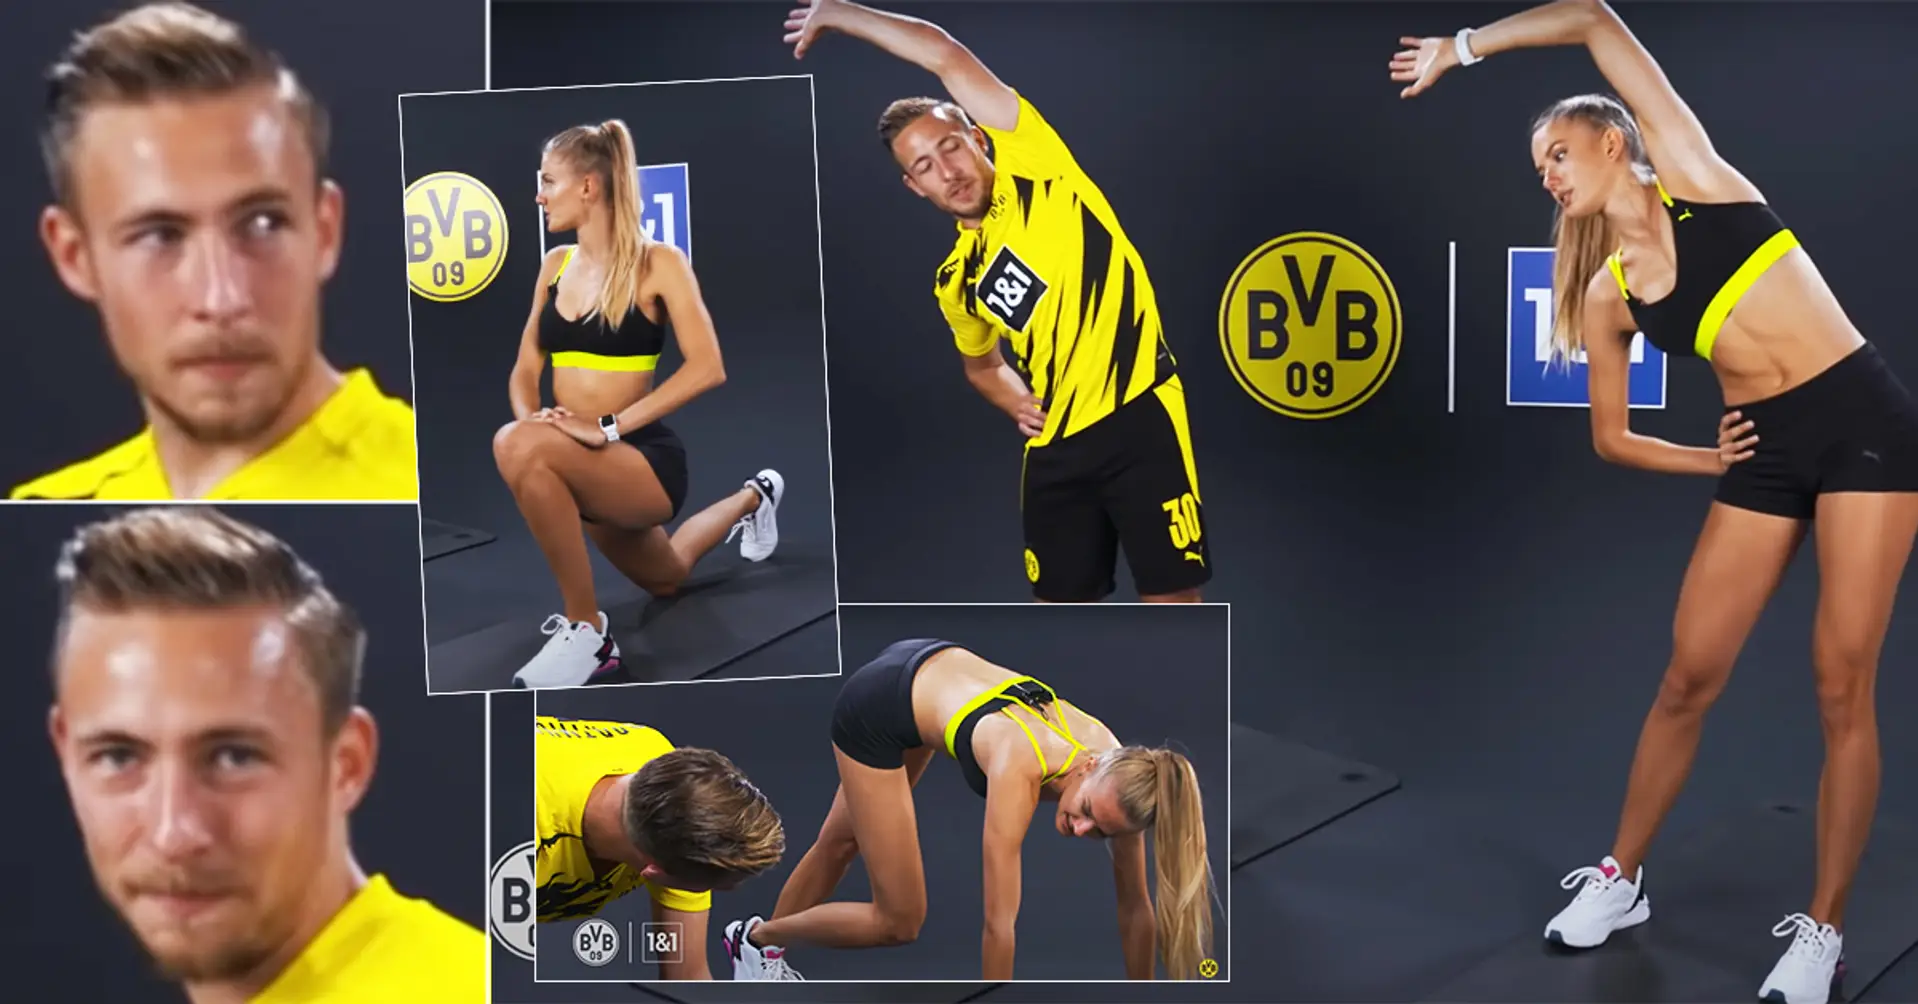 Borussia D. envoie un autre joueur à "l'athlète la plus sexy du monde" Alica Schmidt - et vous devez juste voir le visage de l'homme chanceux